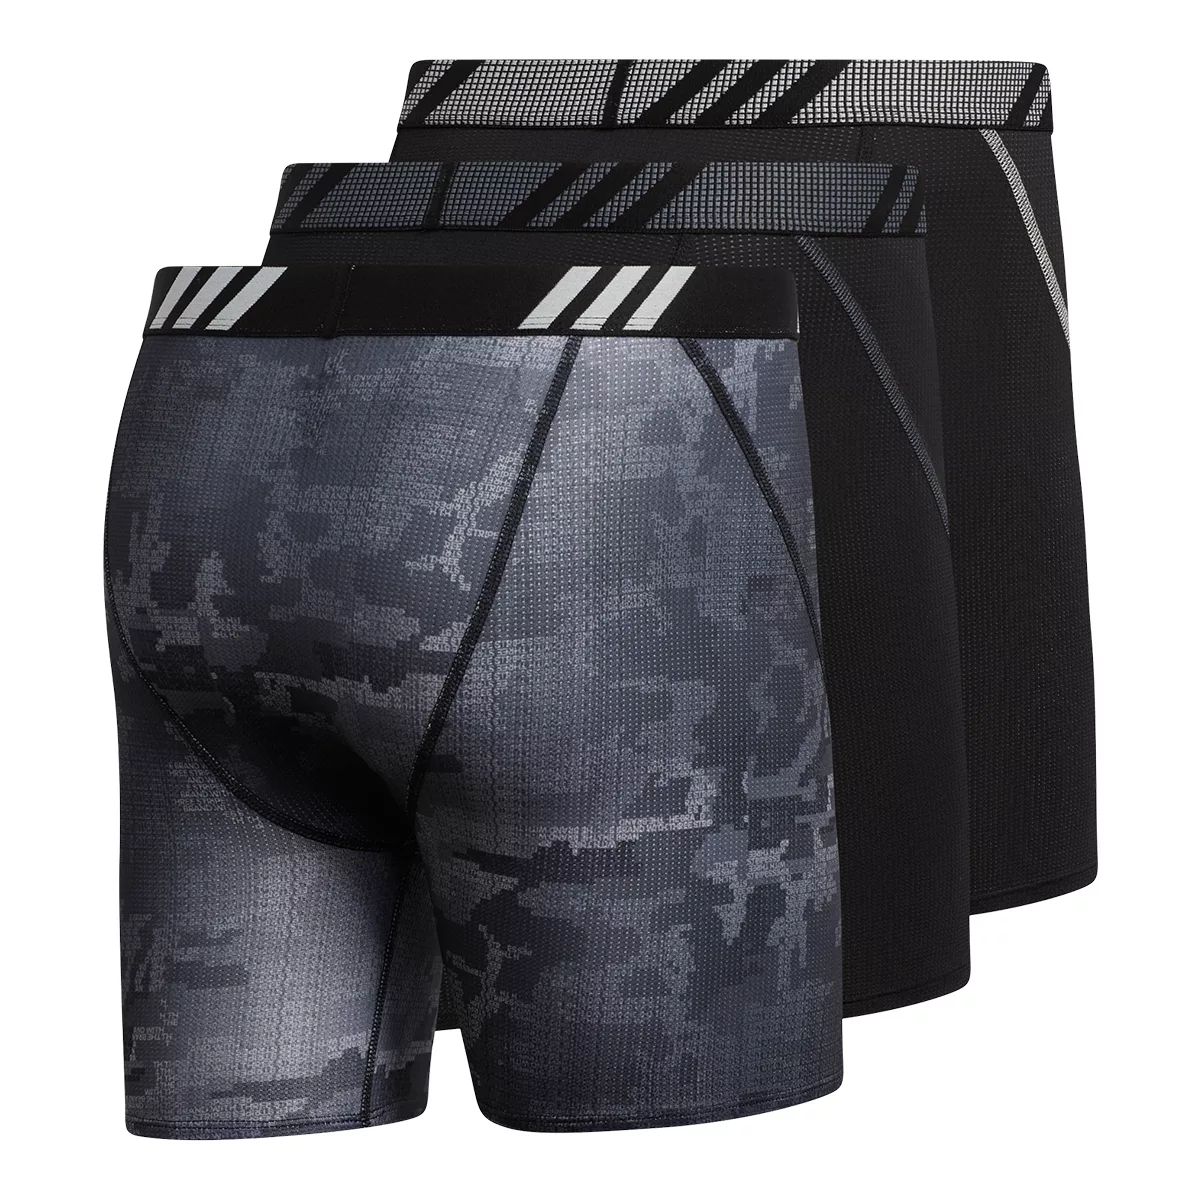 adidas Sport Performance Graphic Men's Boxer Brief, Underwear